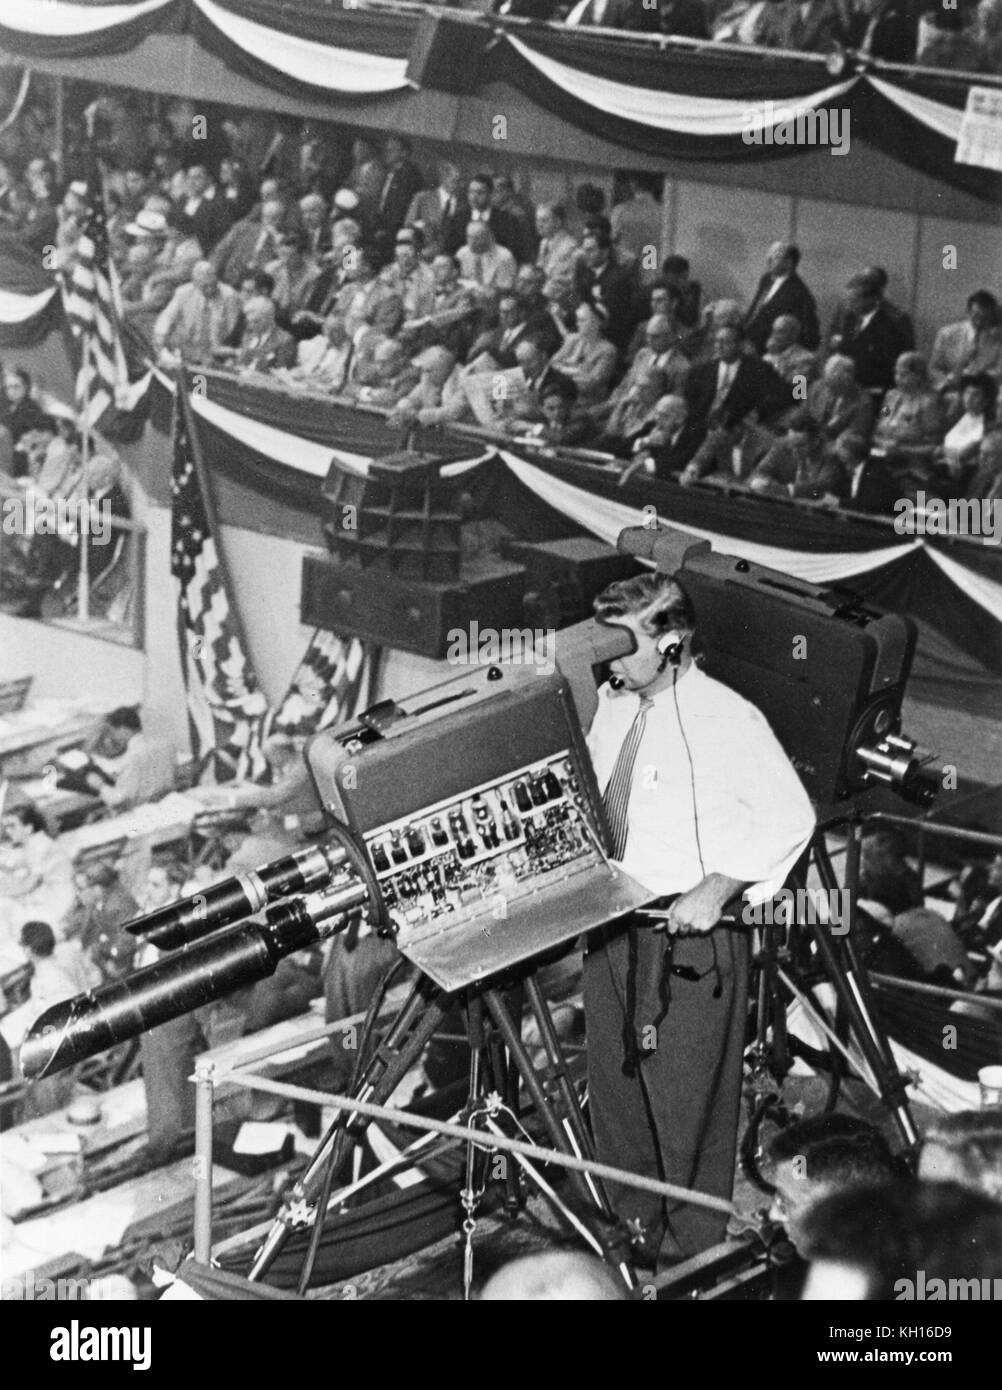 Setenta y siete cámaras de televisión cubiertos trabajando los delegados a la Convención Nacional Demócrata de 1952, celebrada en el Anfiteatro Internacional, Chicago, IL, 07/1952. Foto de stock